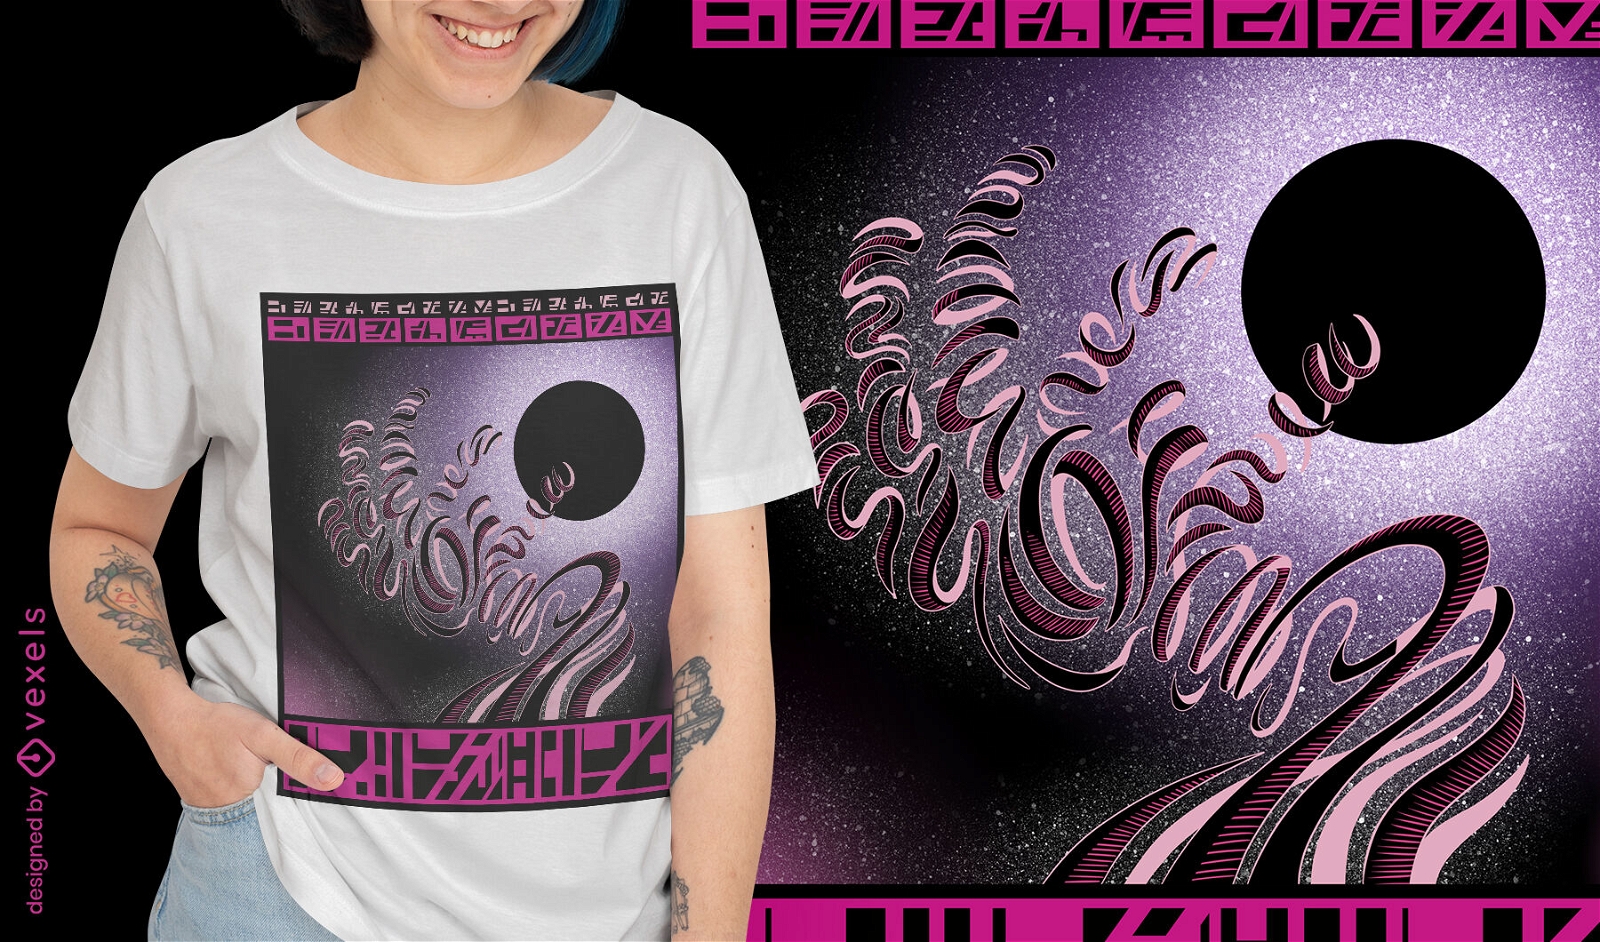 ?bernat?rliche kosmische Hand im Weltraum-T-Shirt-Design